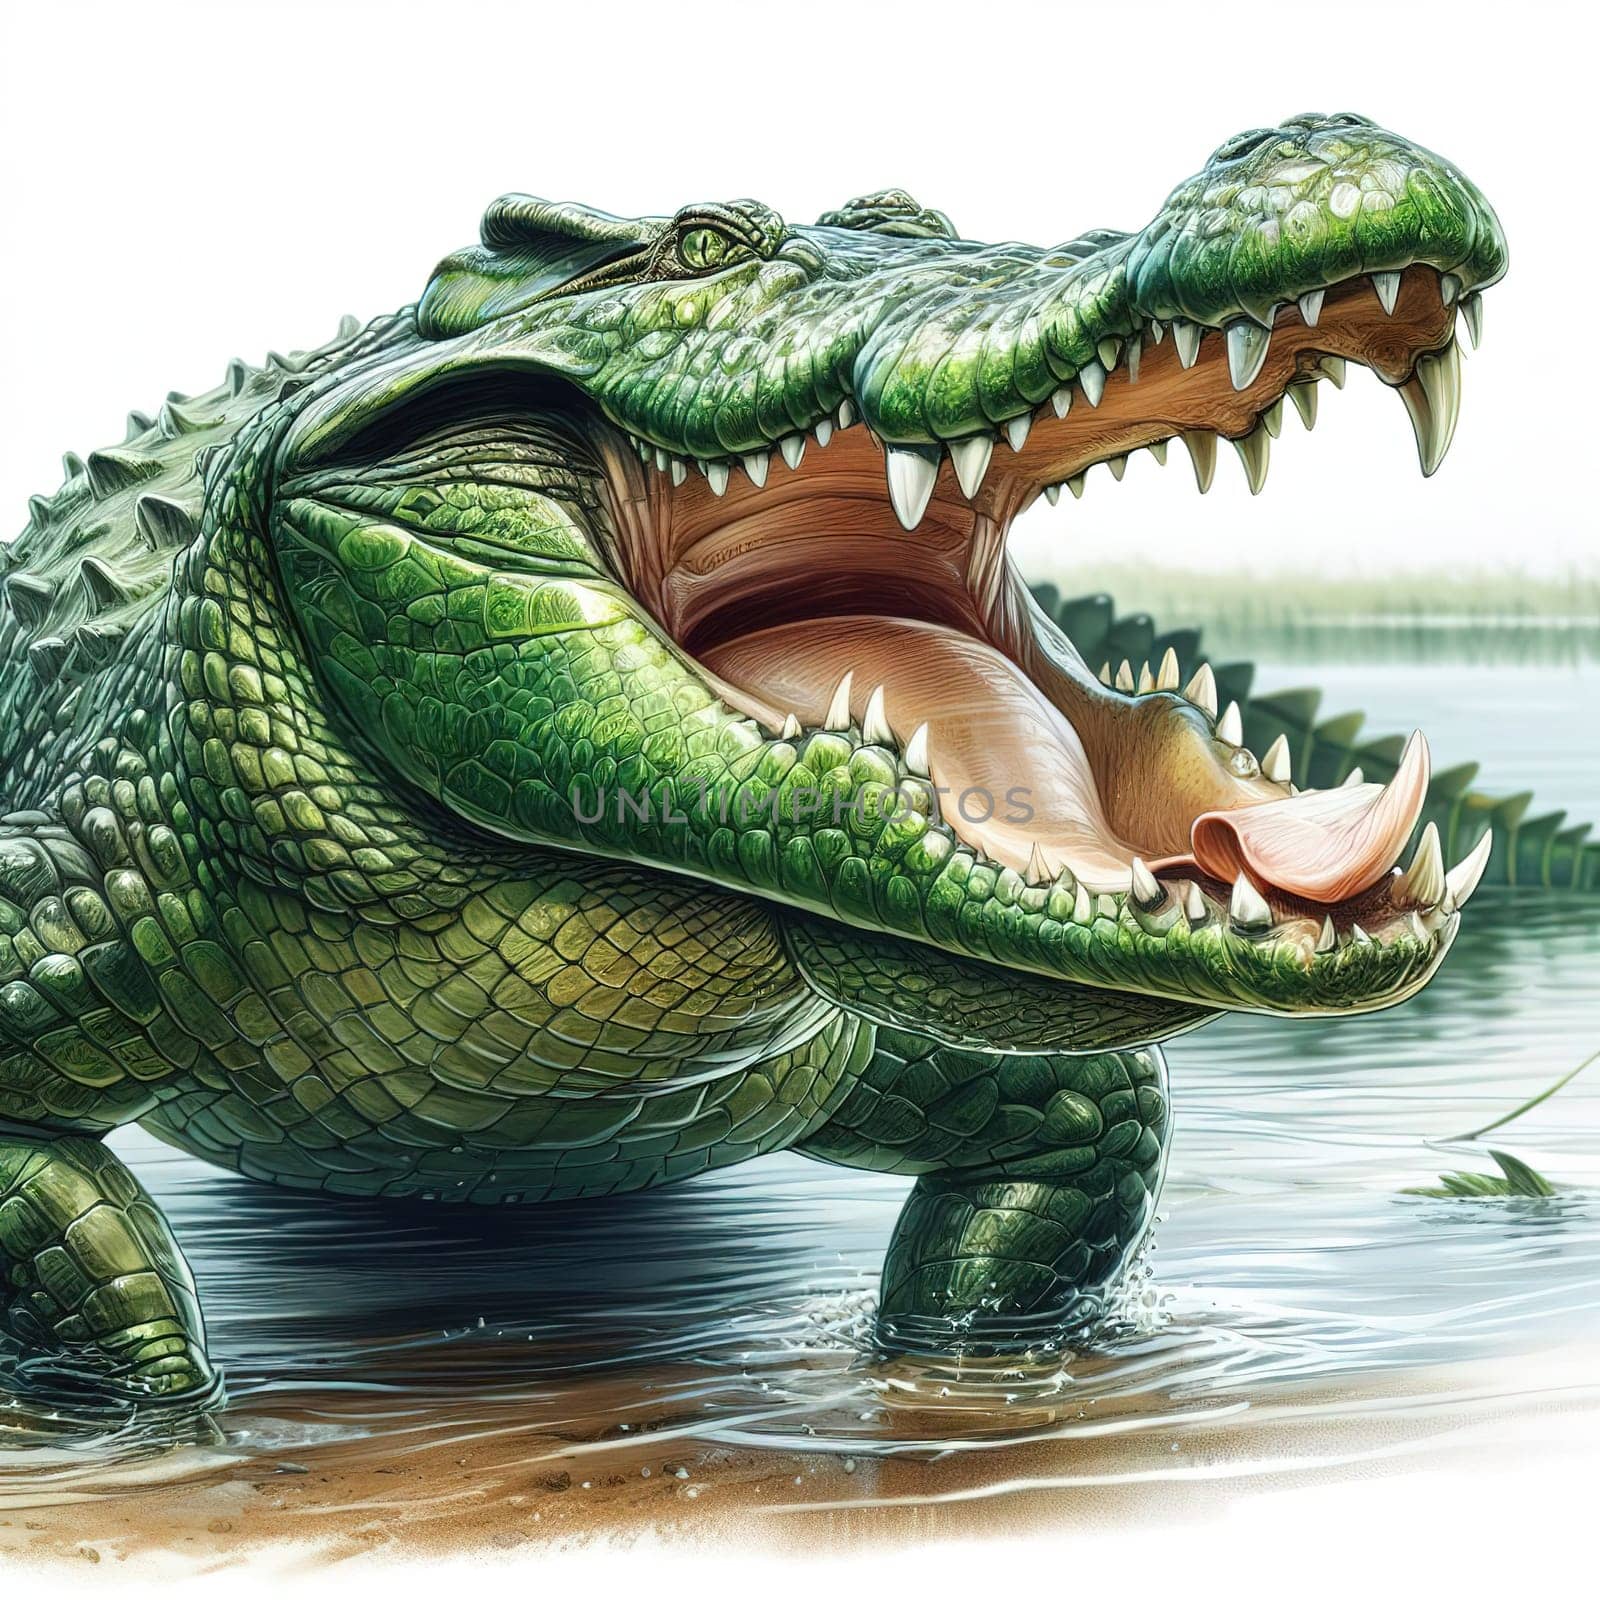 A huge crocodile basks in the sun. Generative AI by gordiza